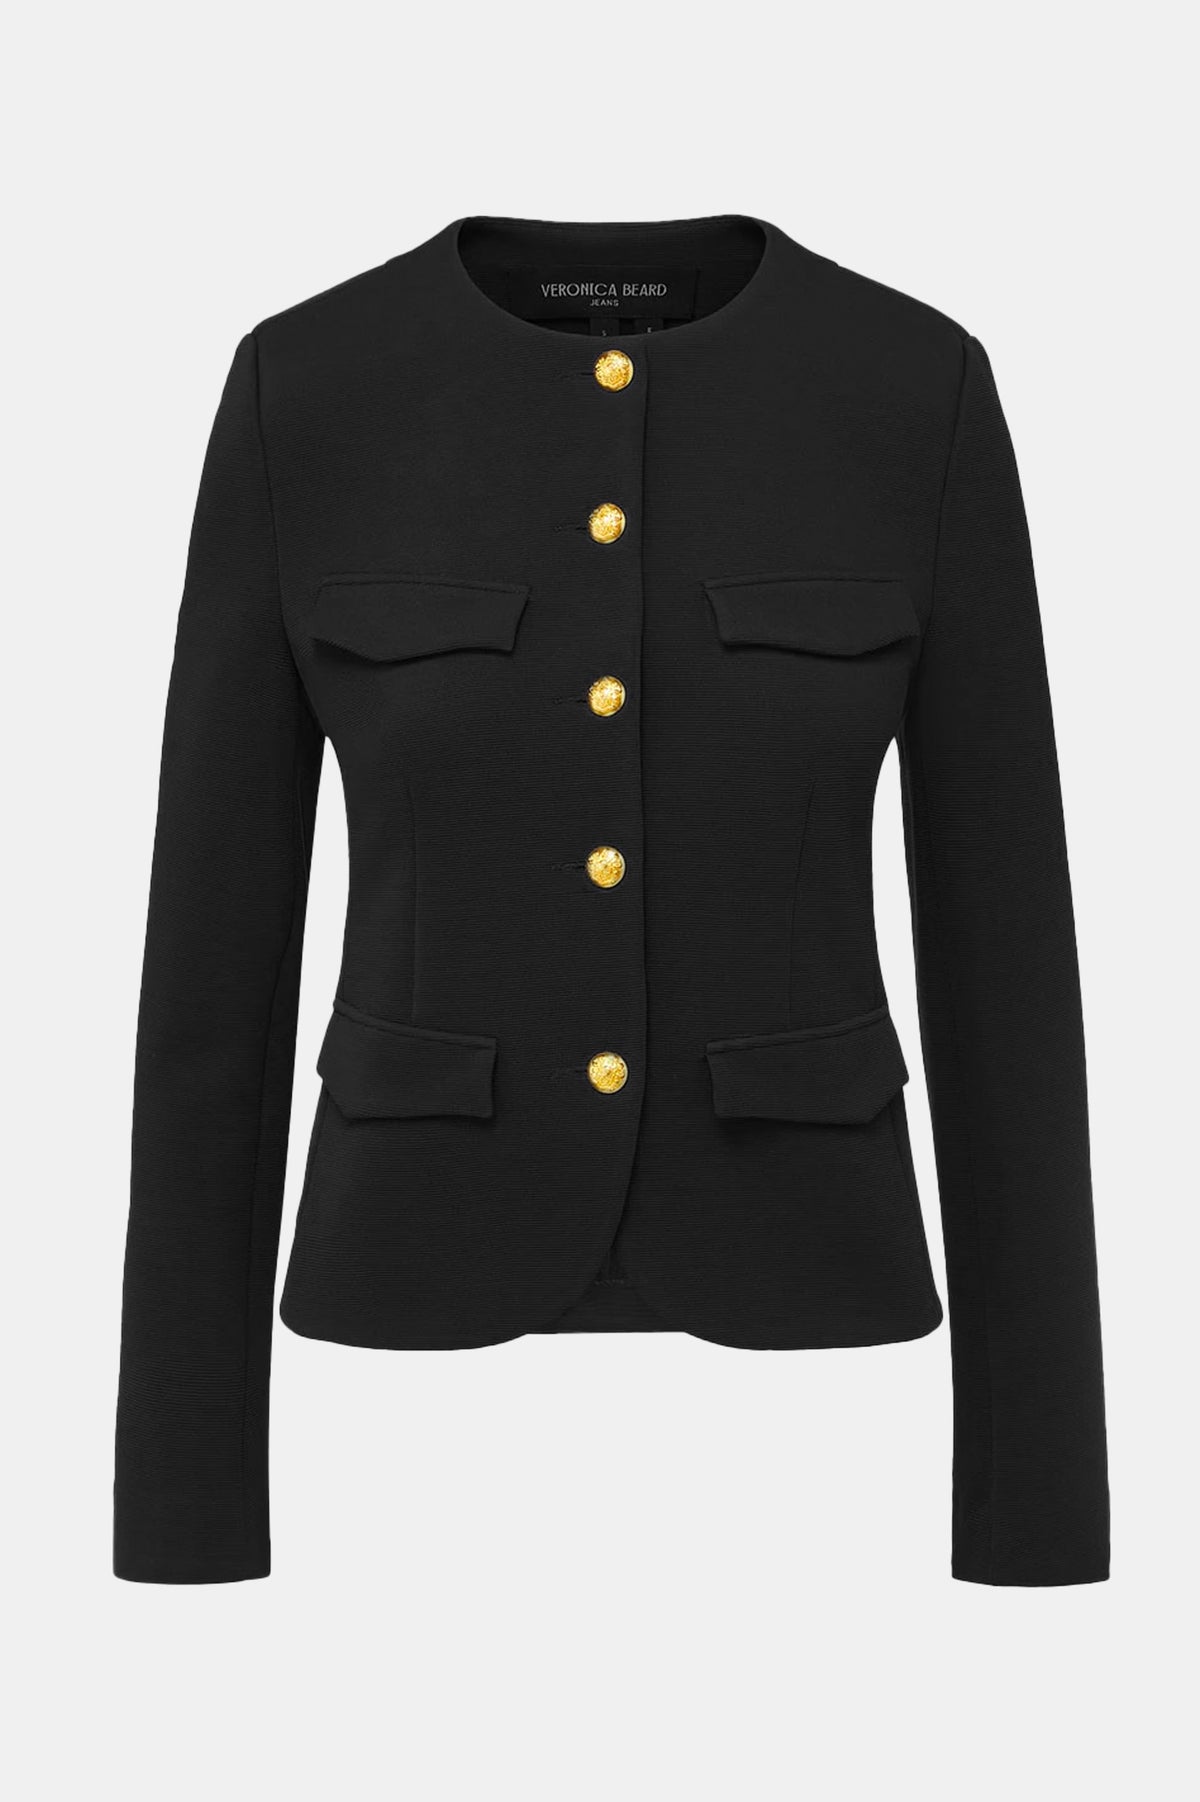 Kensington Knit Jacket in Black